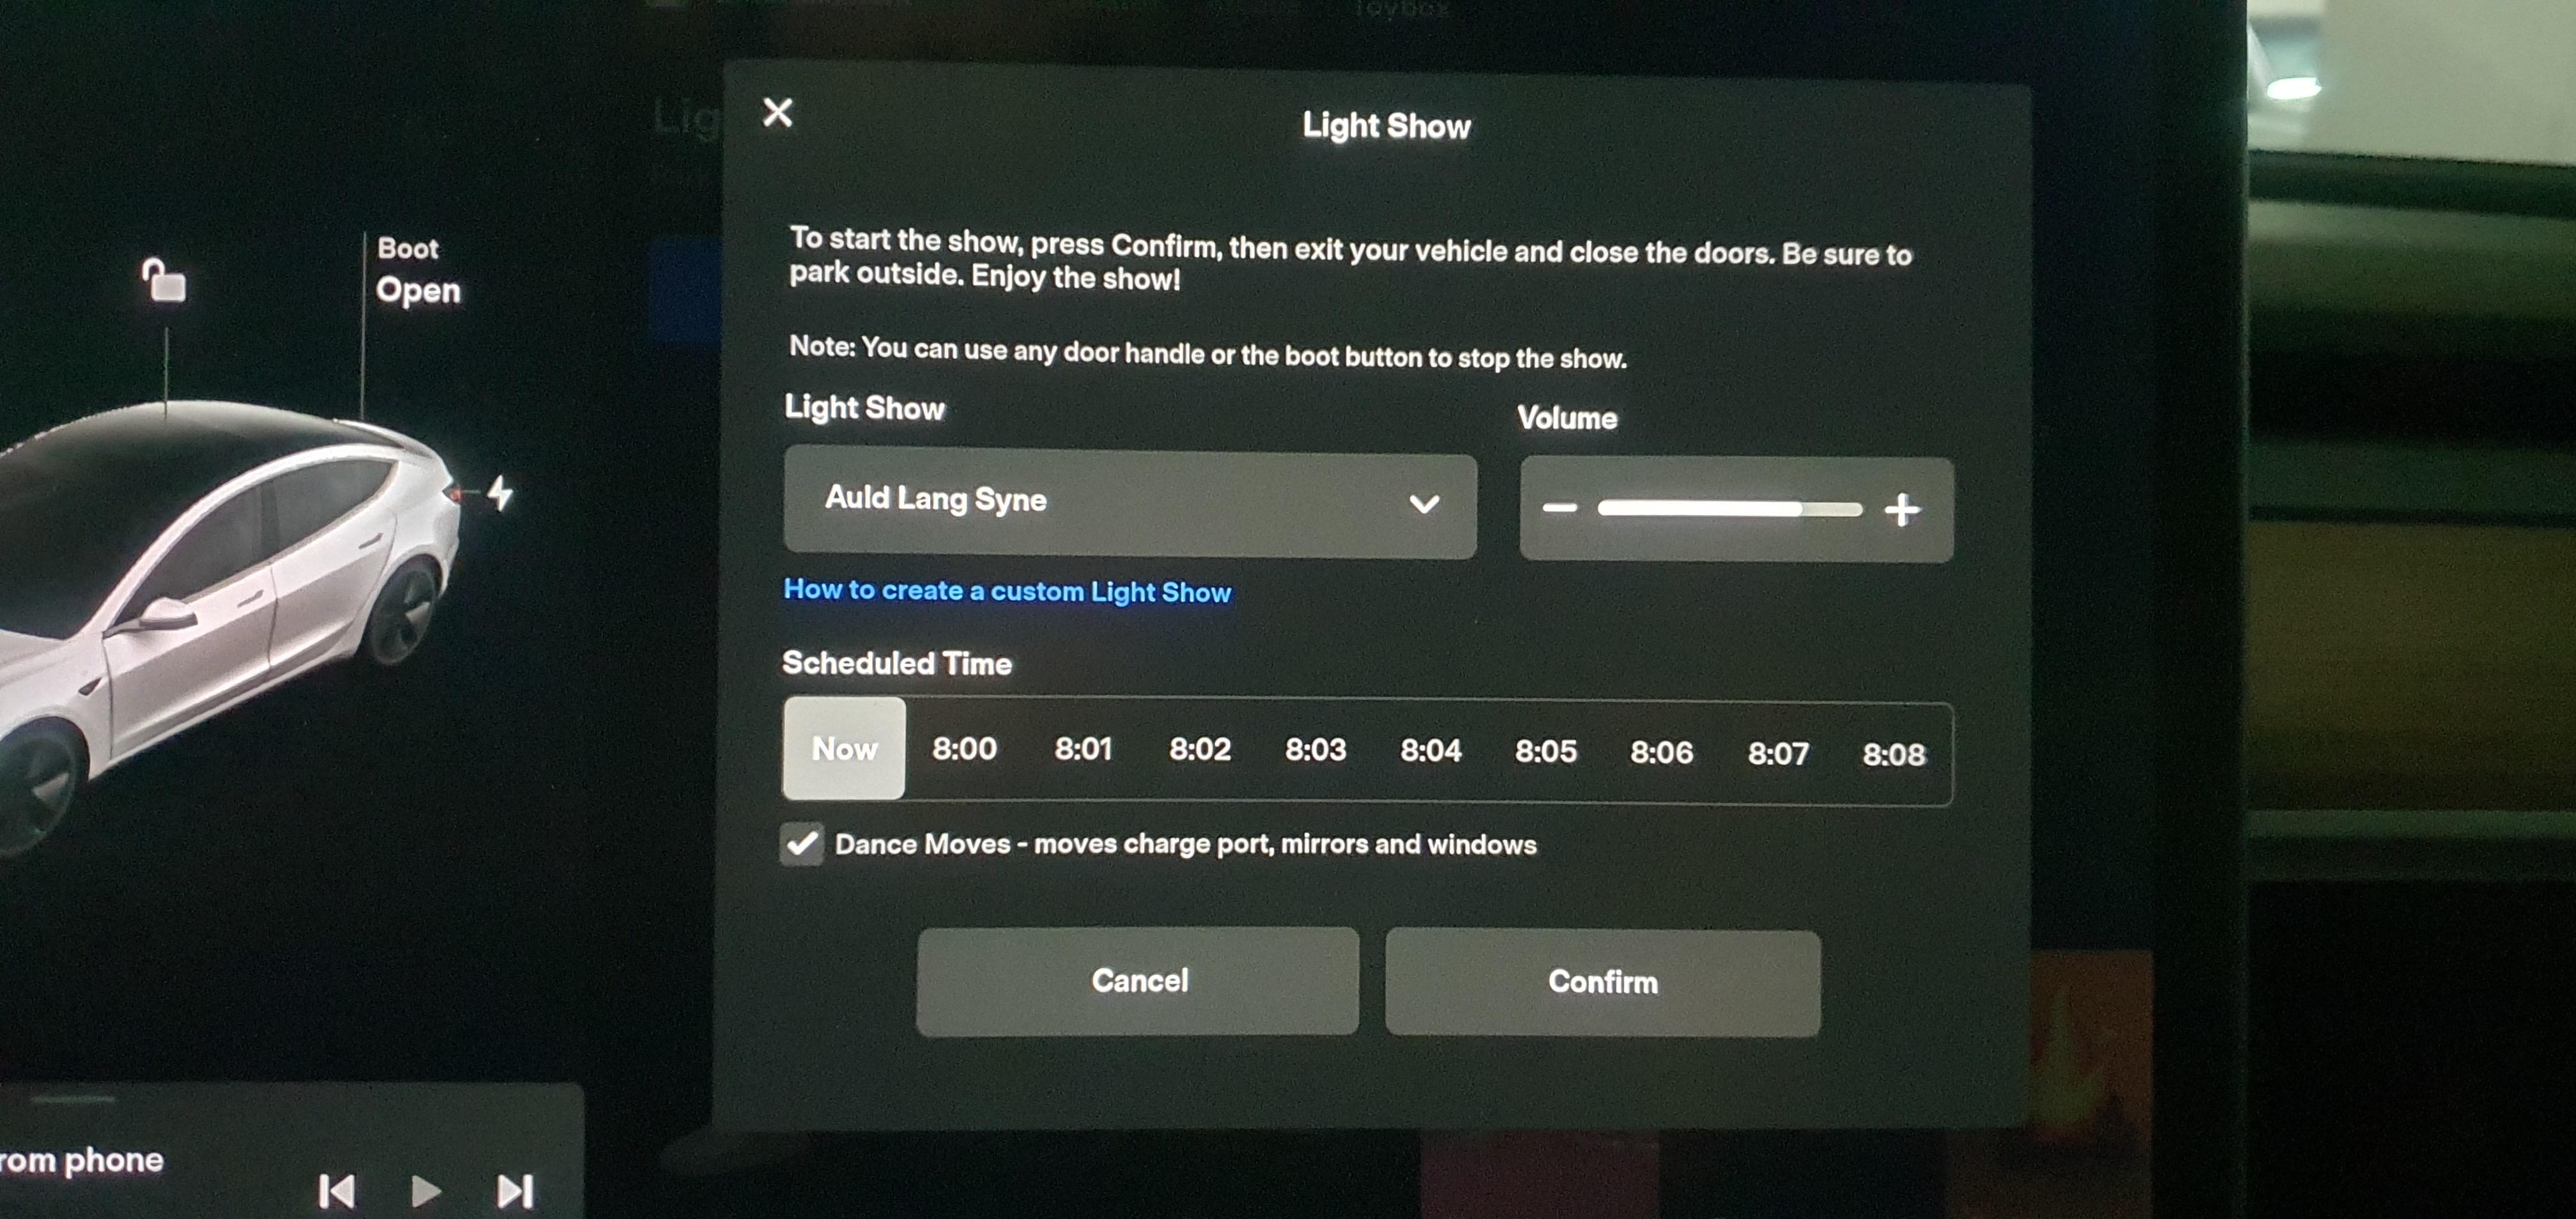 Light Show - Confirm